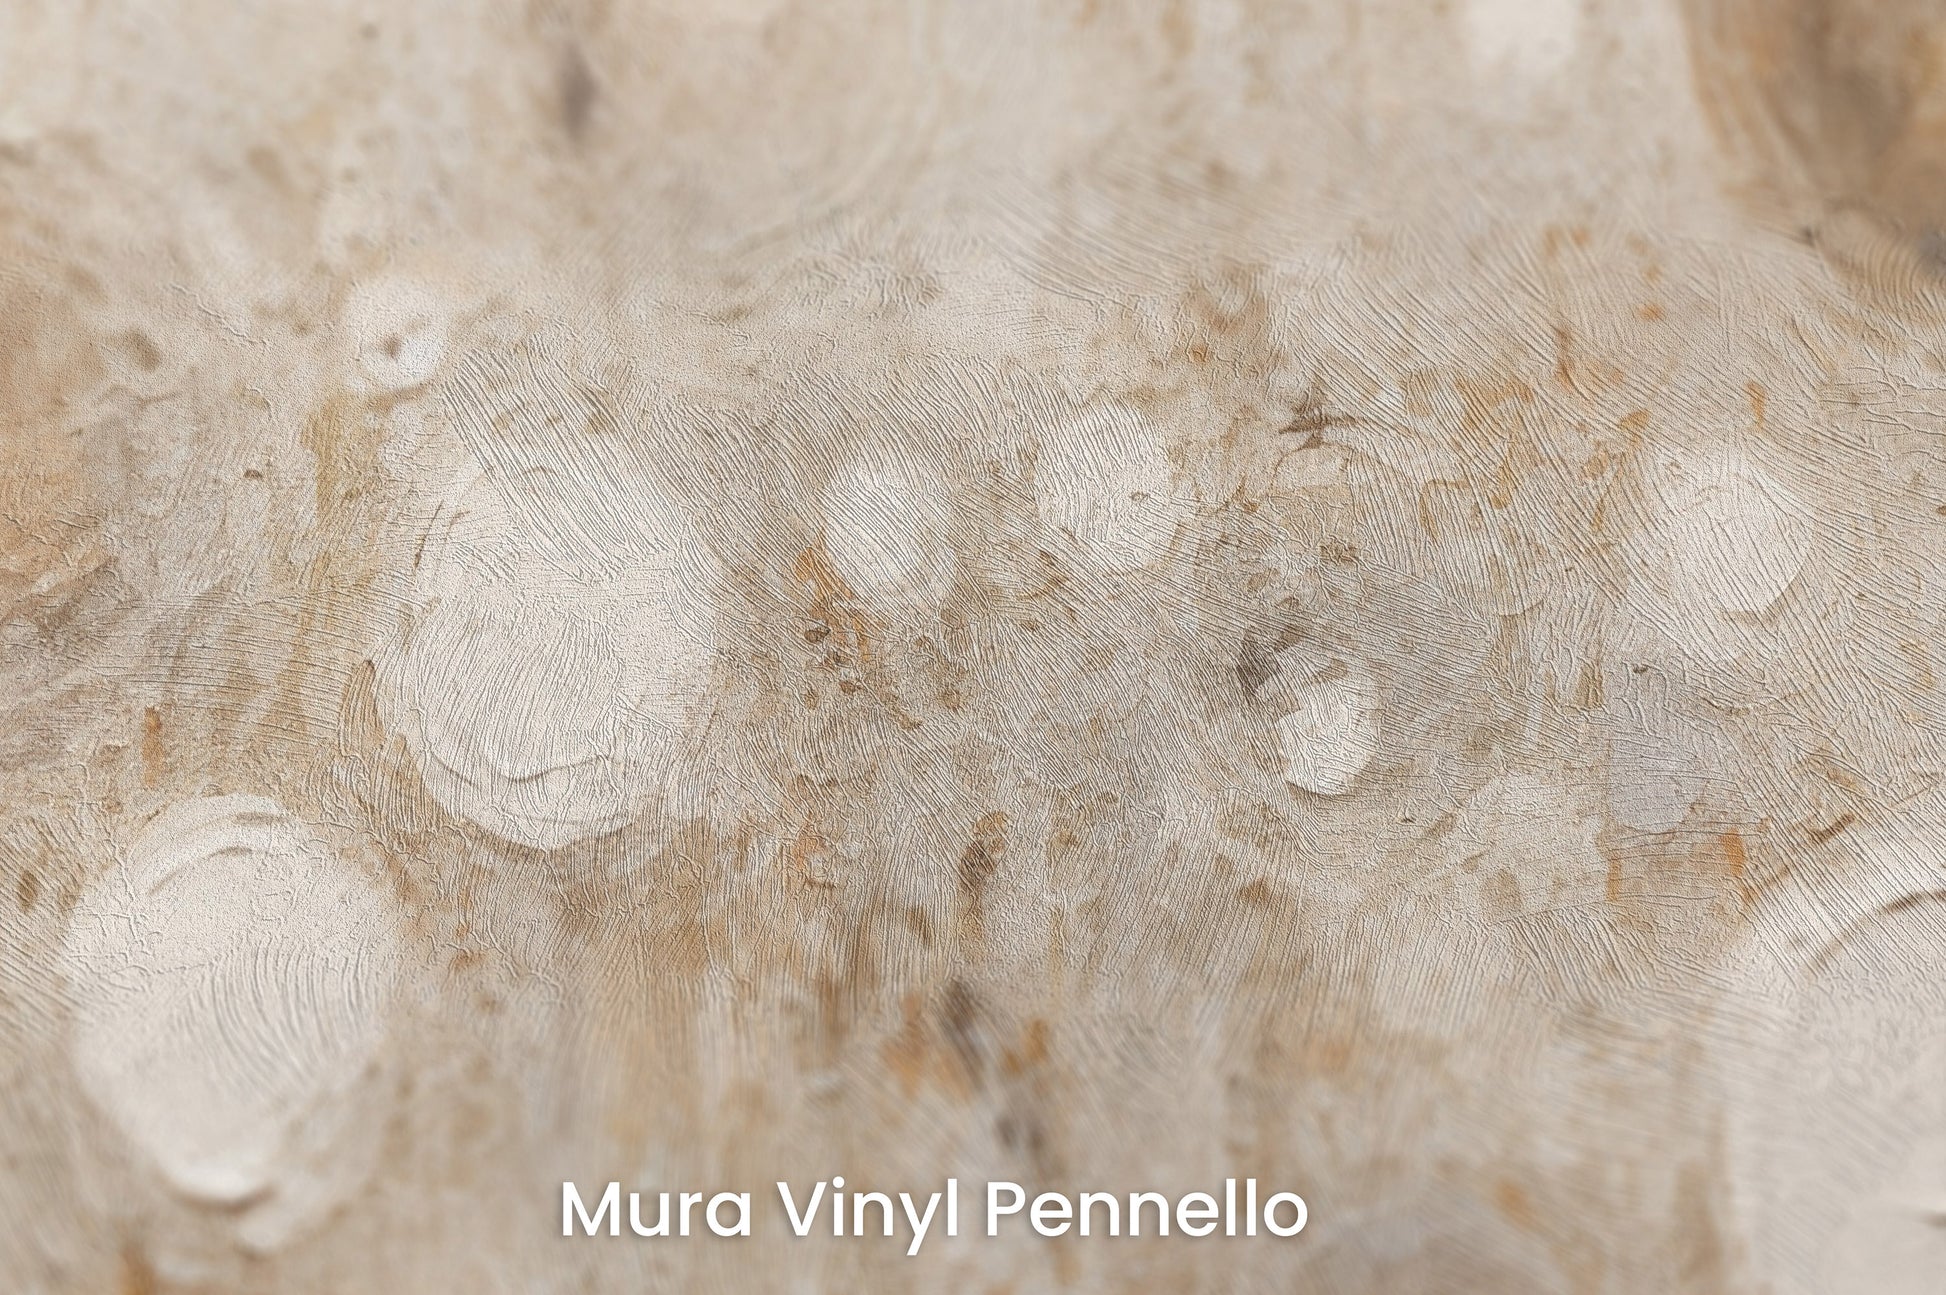 Zbliżenie na artystyczną fototapetę o nazwie ANCIENT SOLAR WHISPERS na podłożu Mura Vinyl Pennello - faktura pociągnięć pędzla malarskiego.